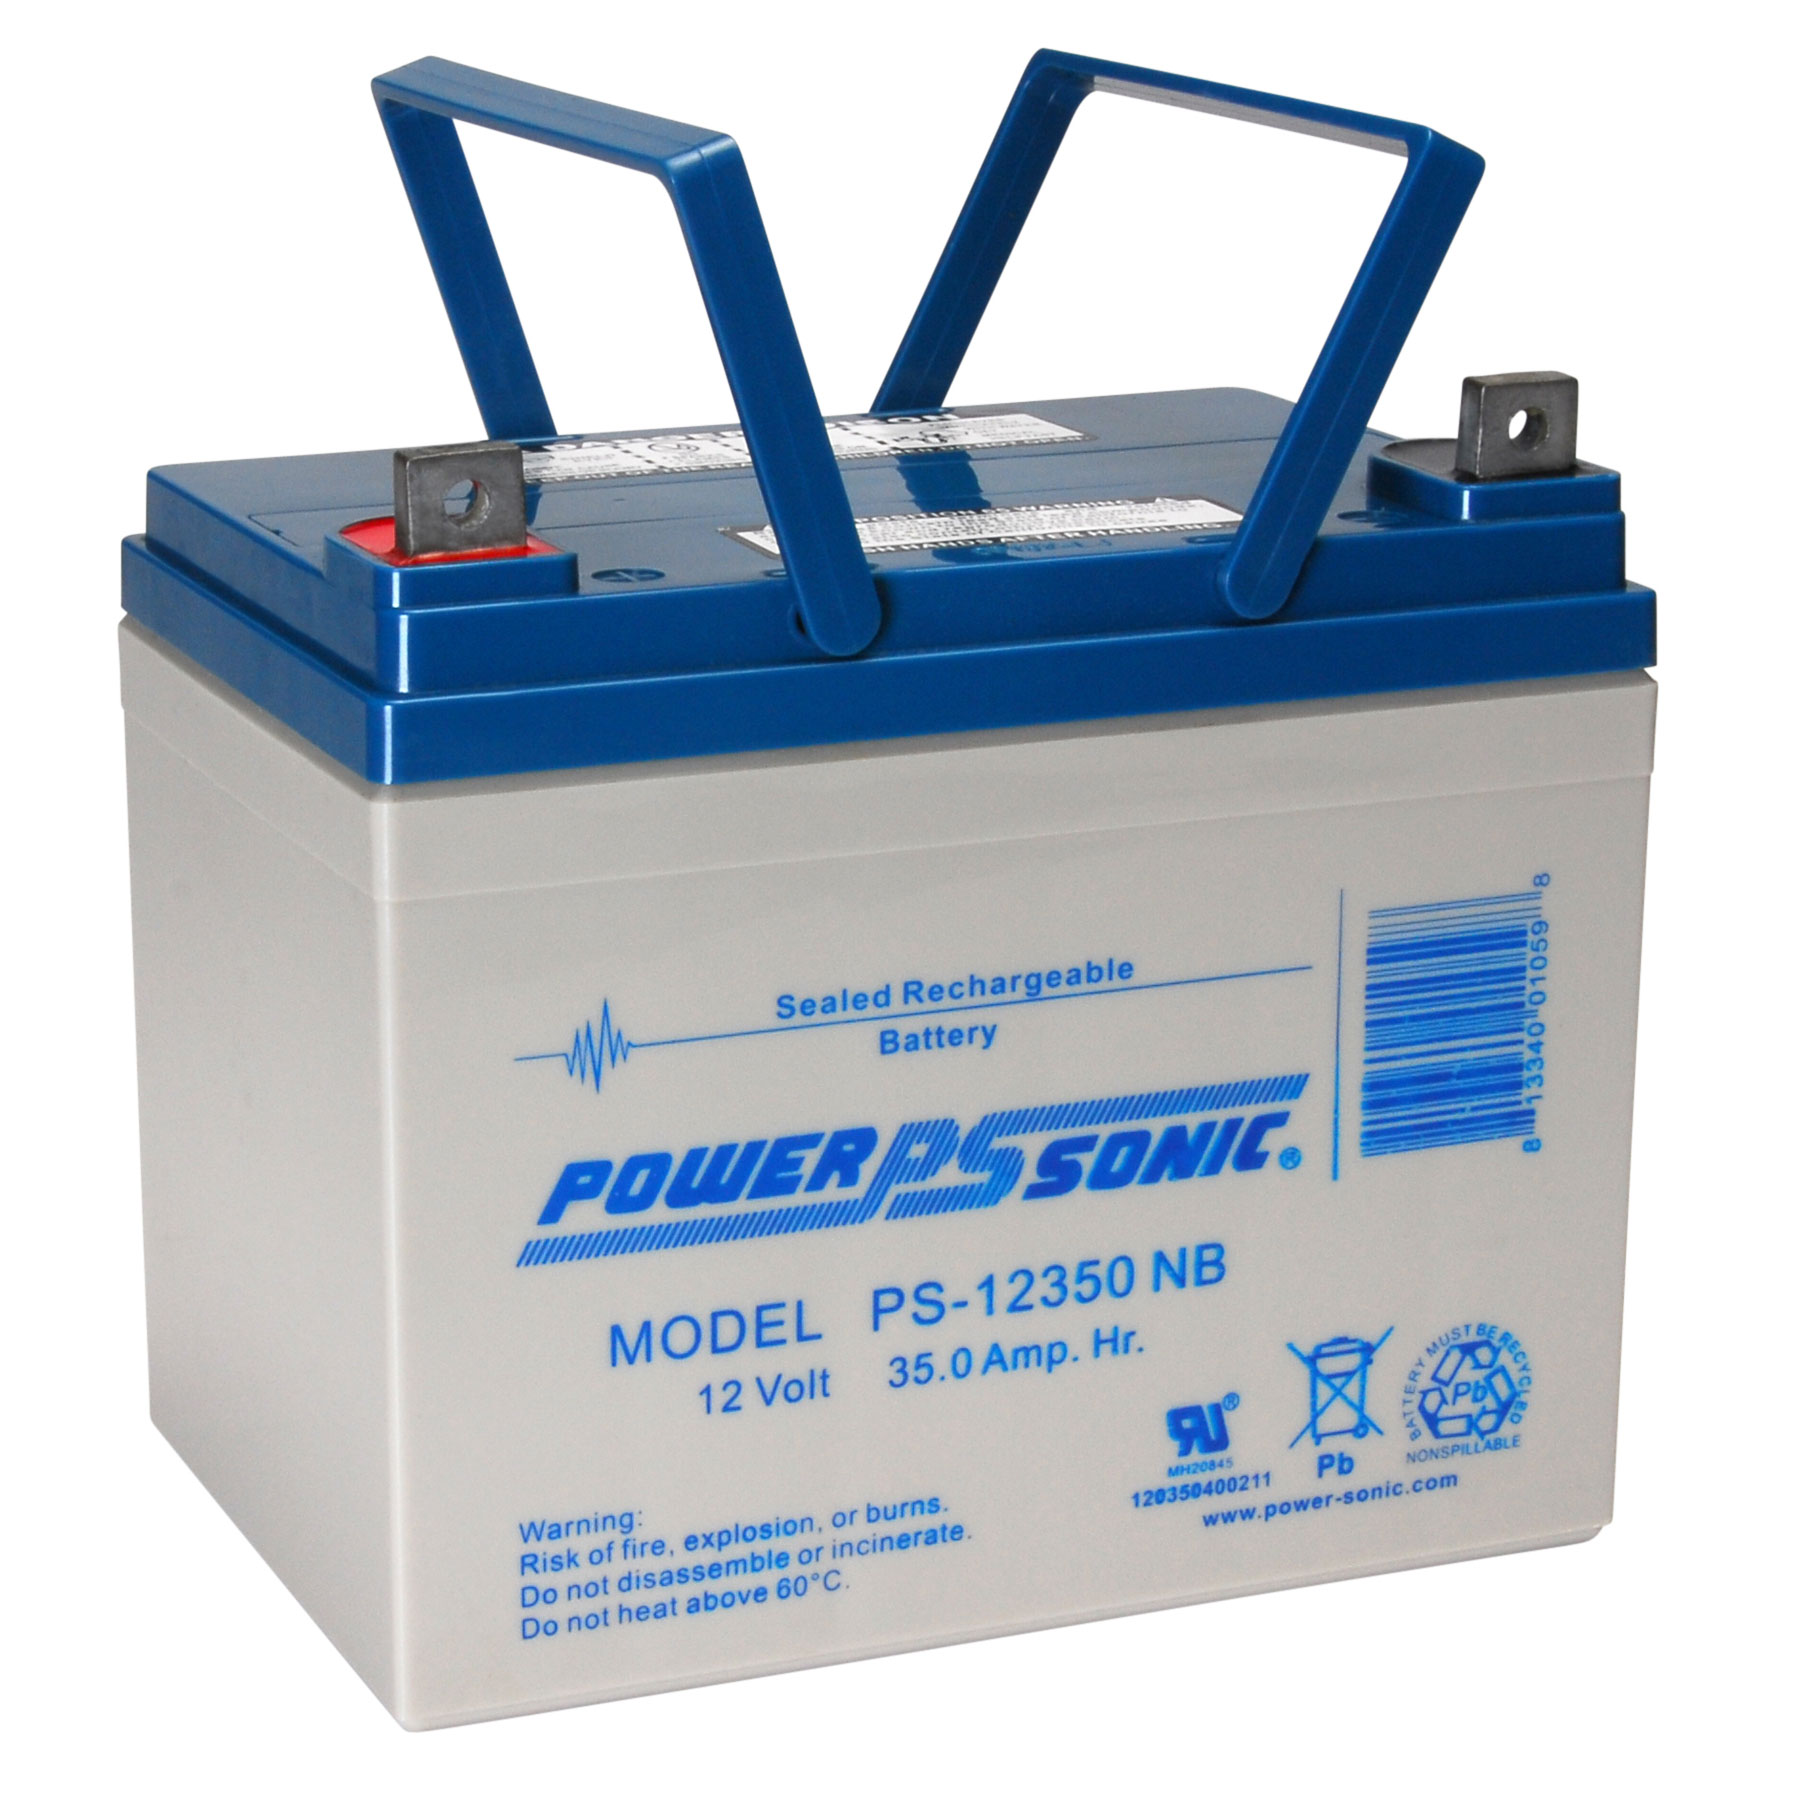 POWER SONIC蓄电池/POWER SONIC蓄电池销售